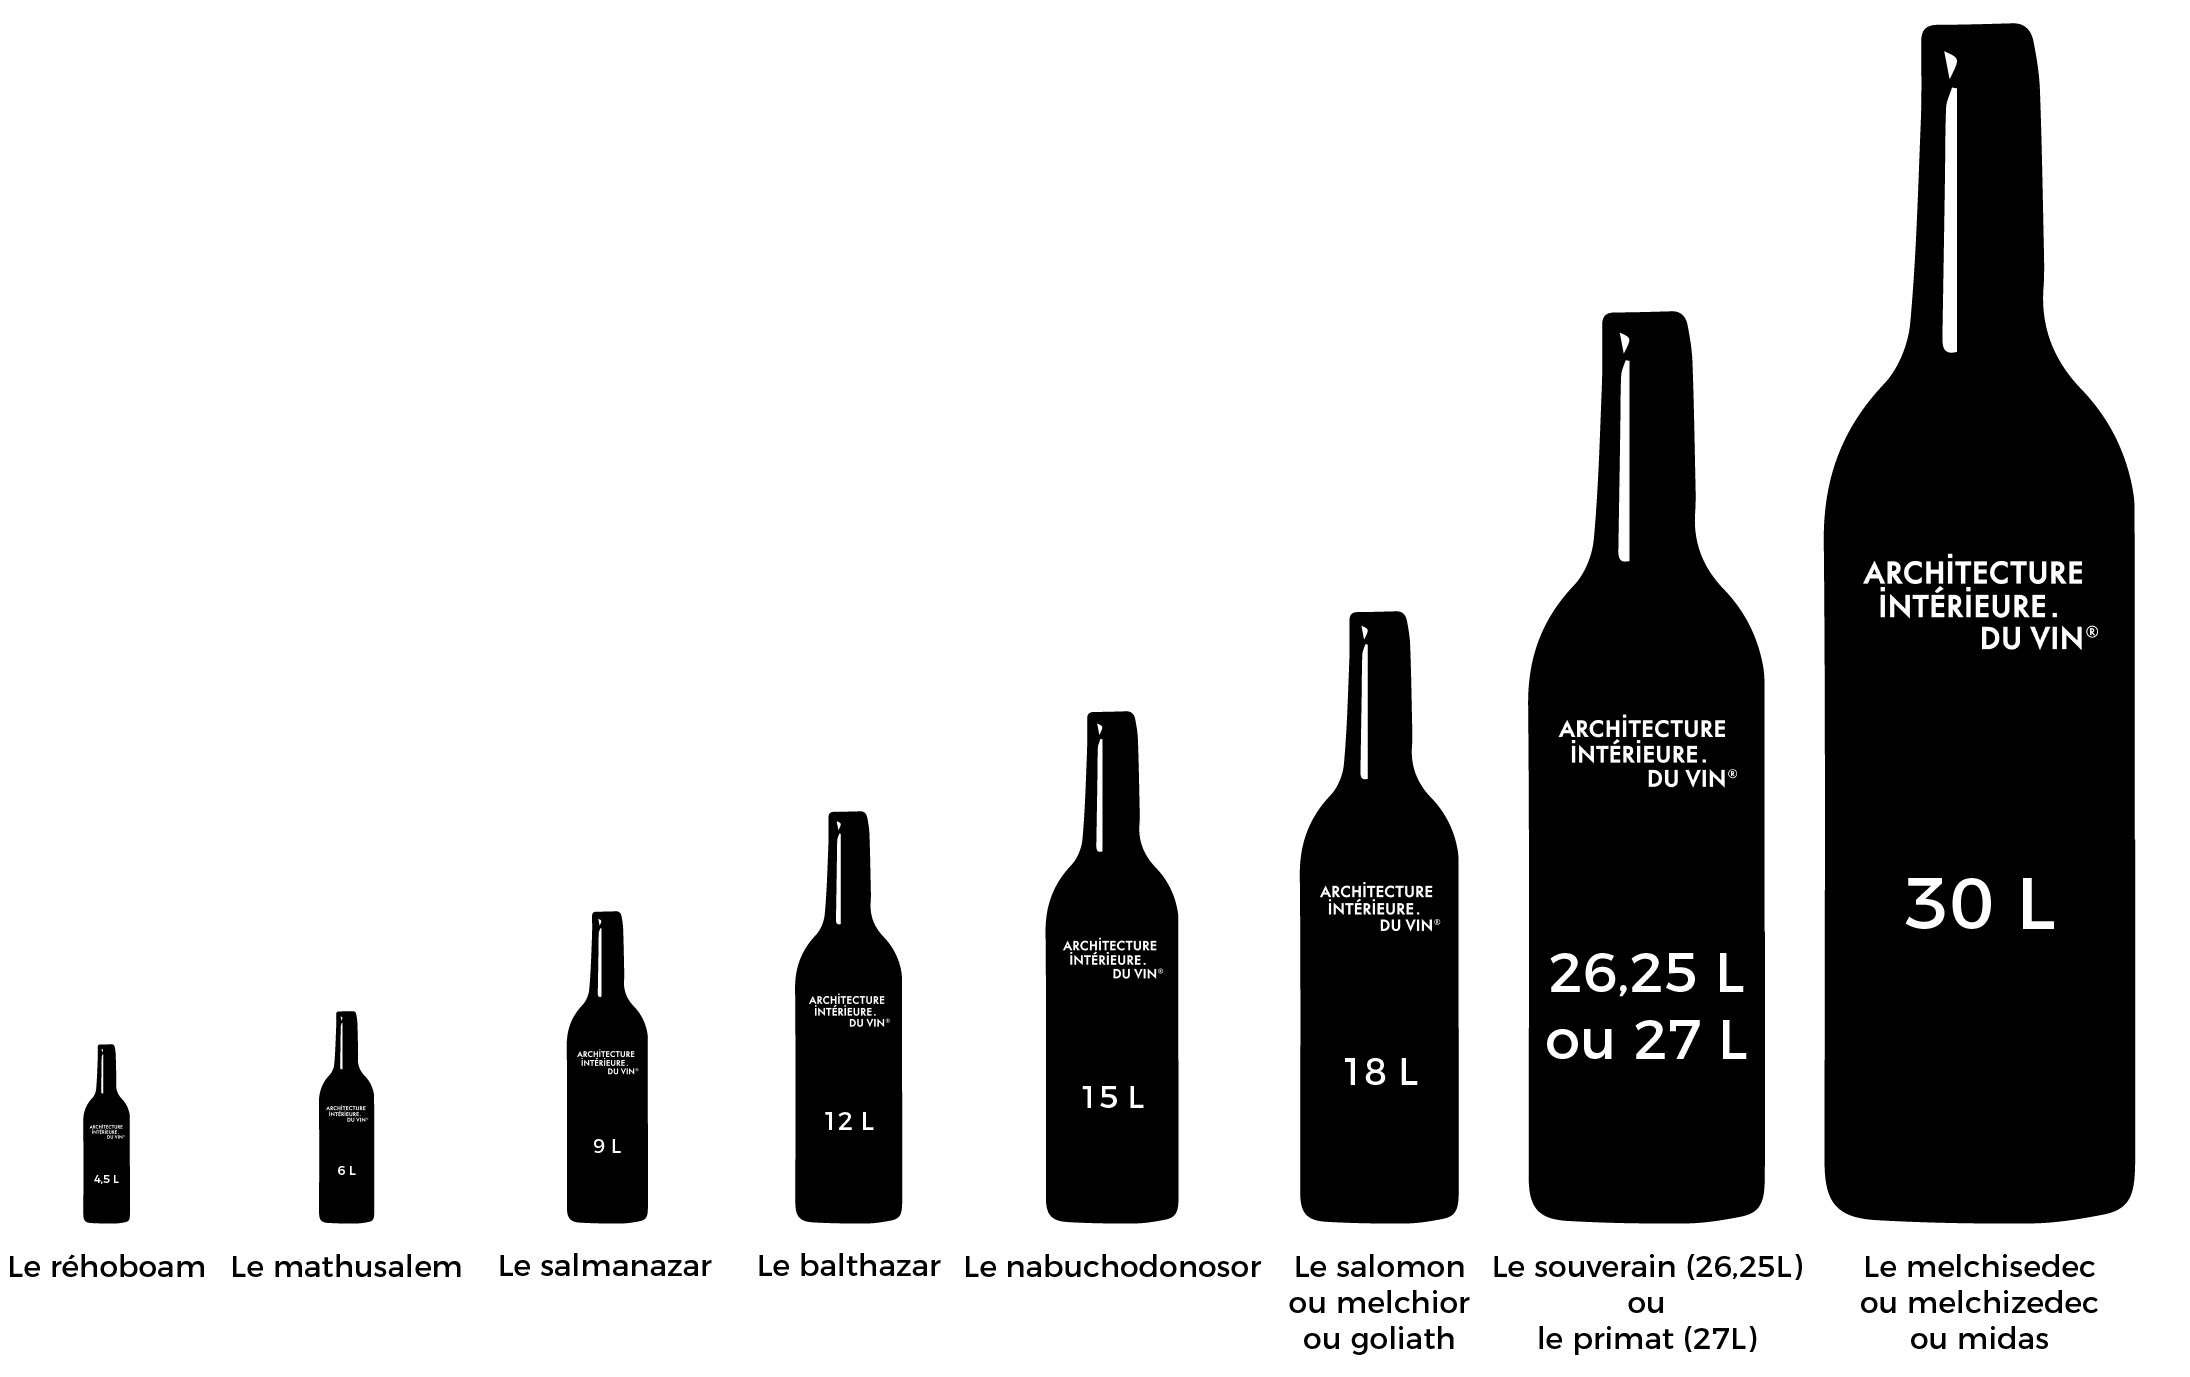 Pourquoi les bouteilles de vin ont elles des formes et formats différents ?